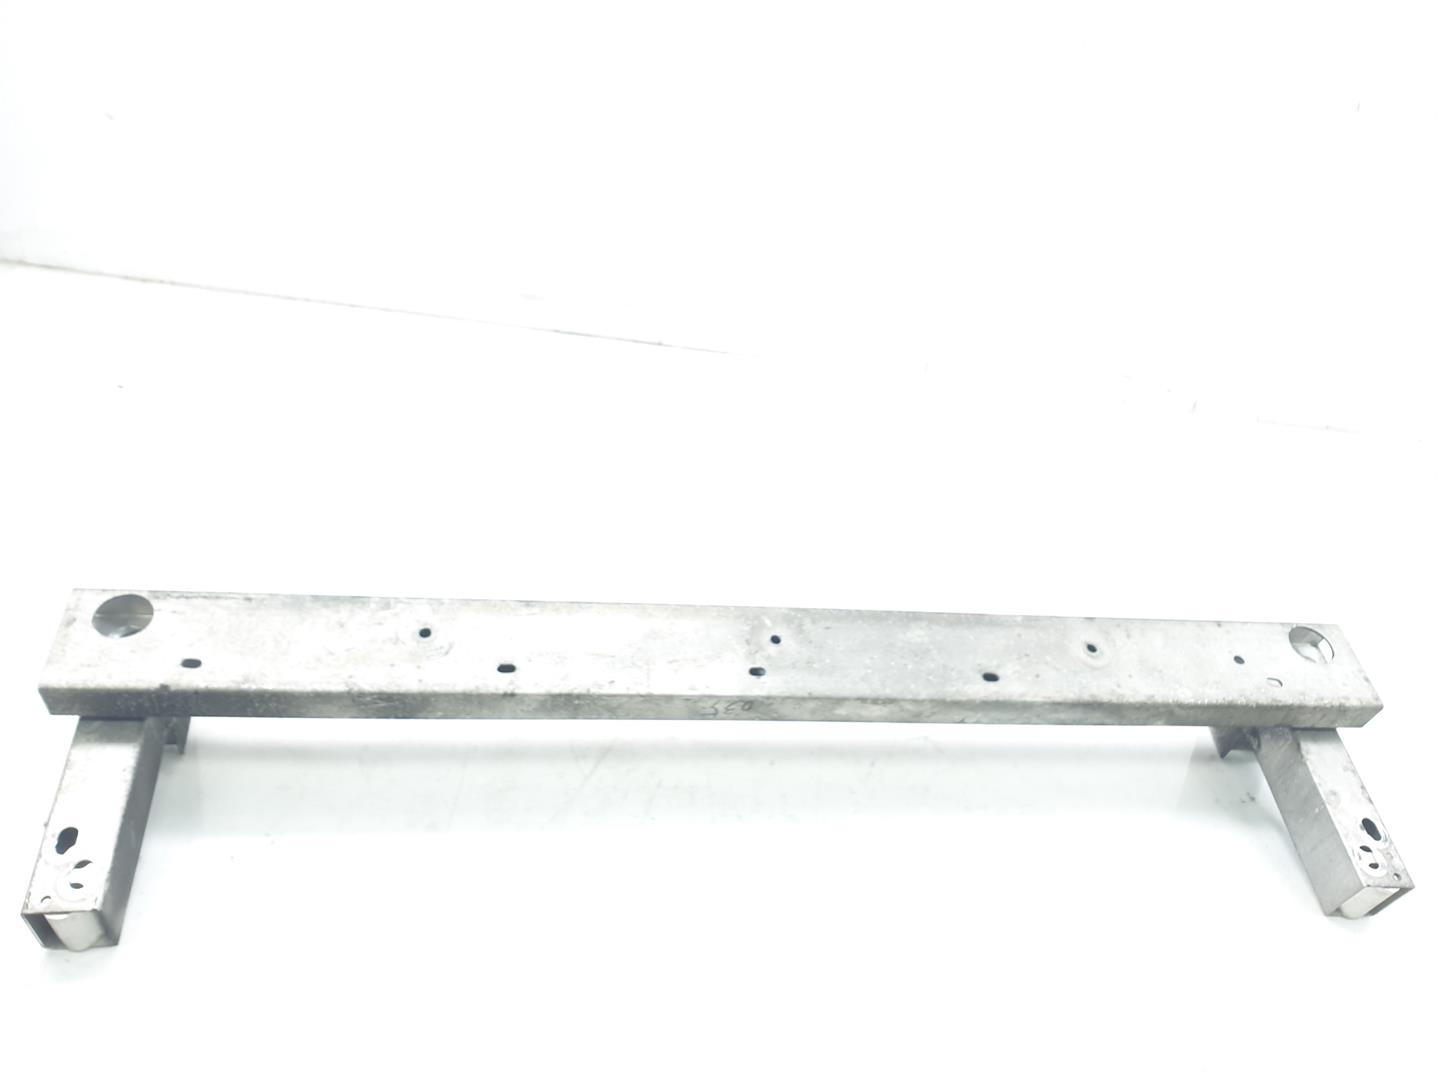 INFINITI Q50 (2013-present) Front Reinforcement Bar 620304GA0A, 620304GA0A 24551590